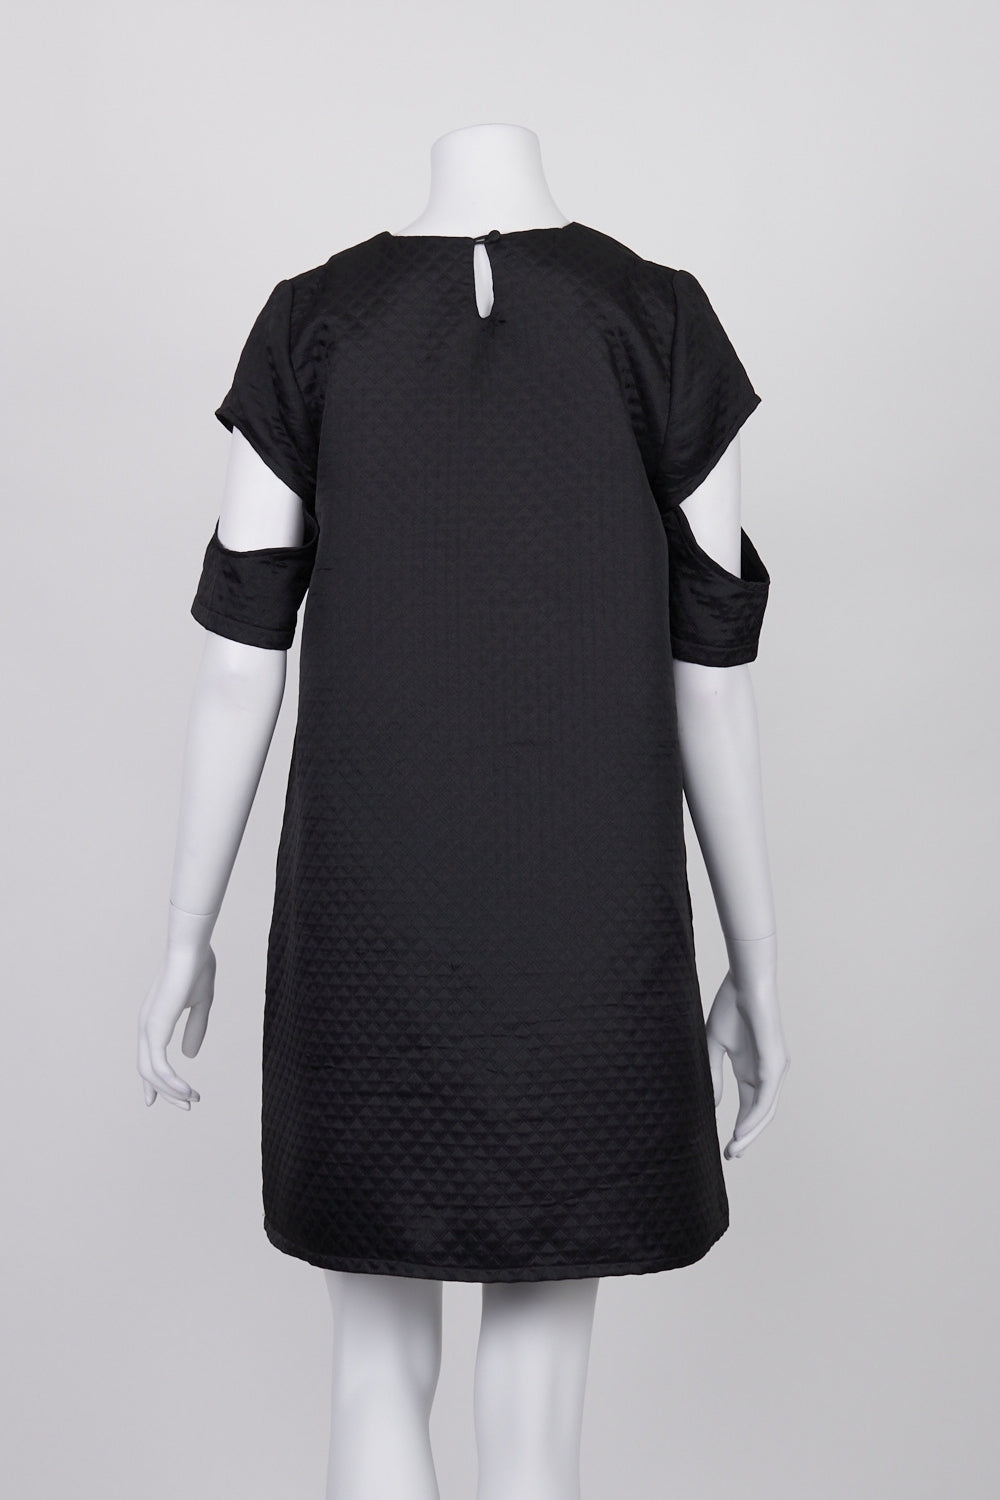 Kuwaii Black Textured Cold Shoulder Dress 10